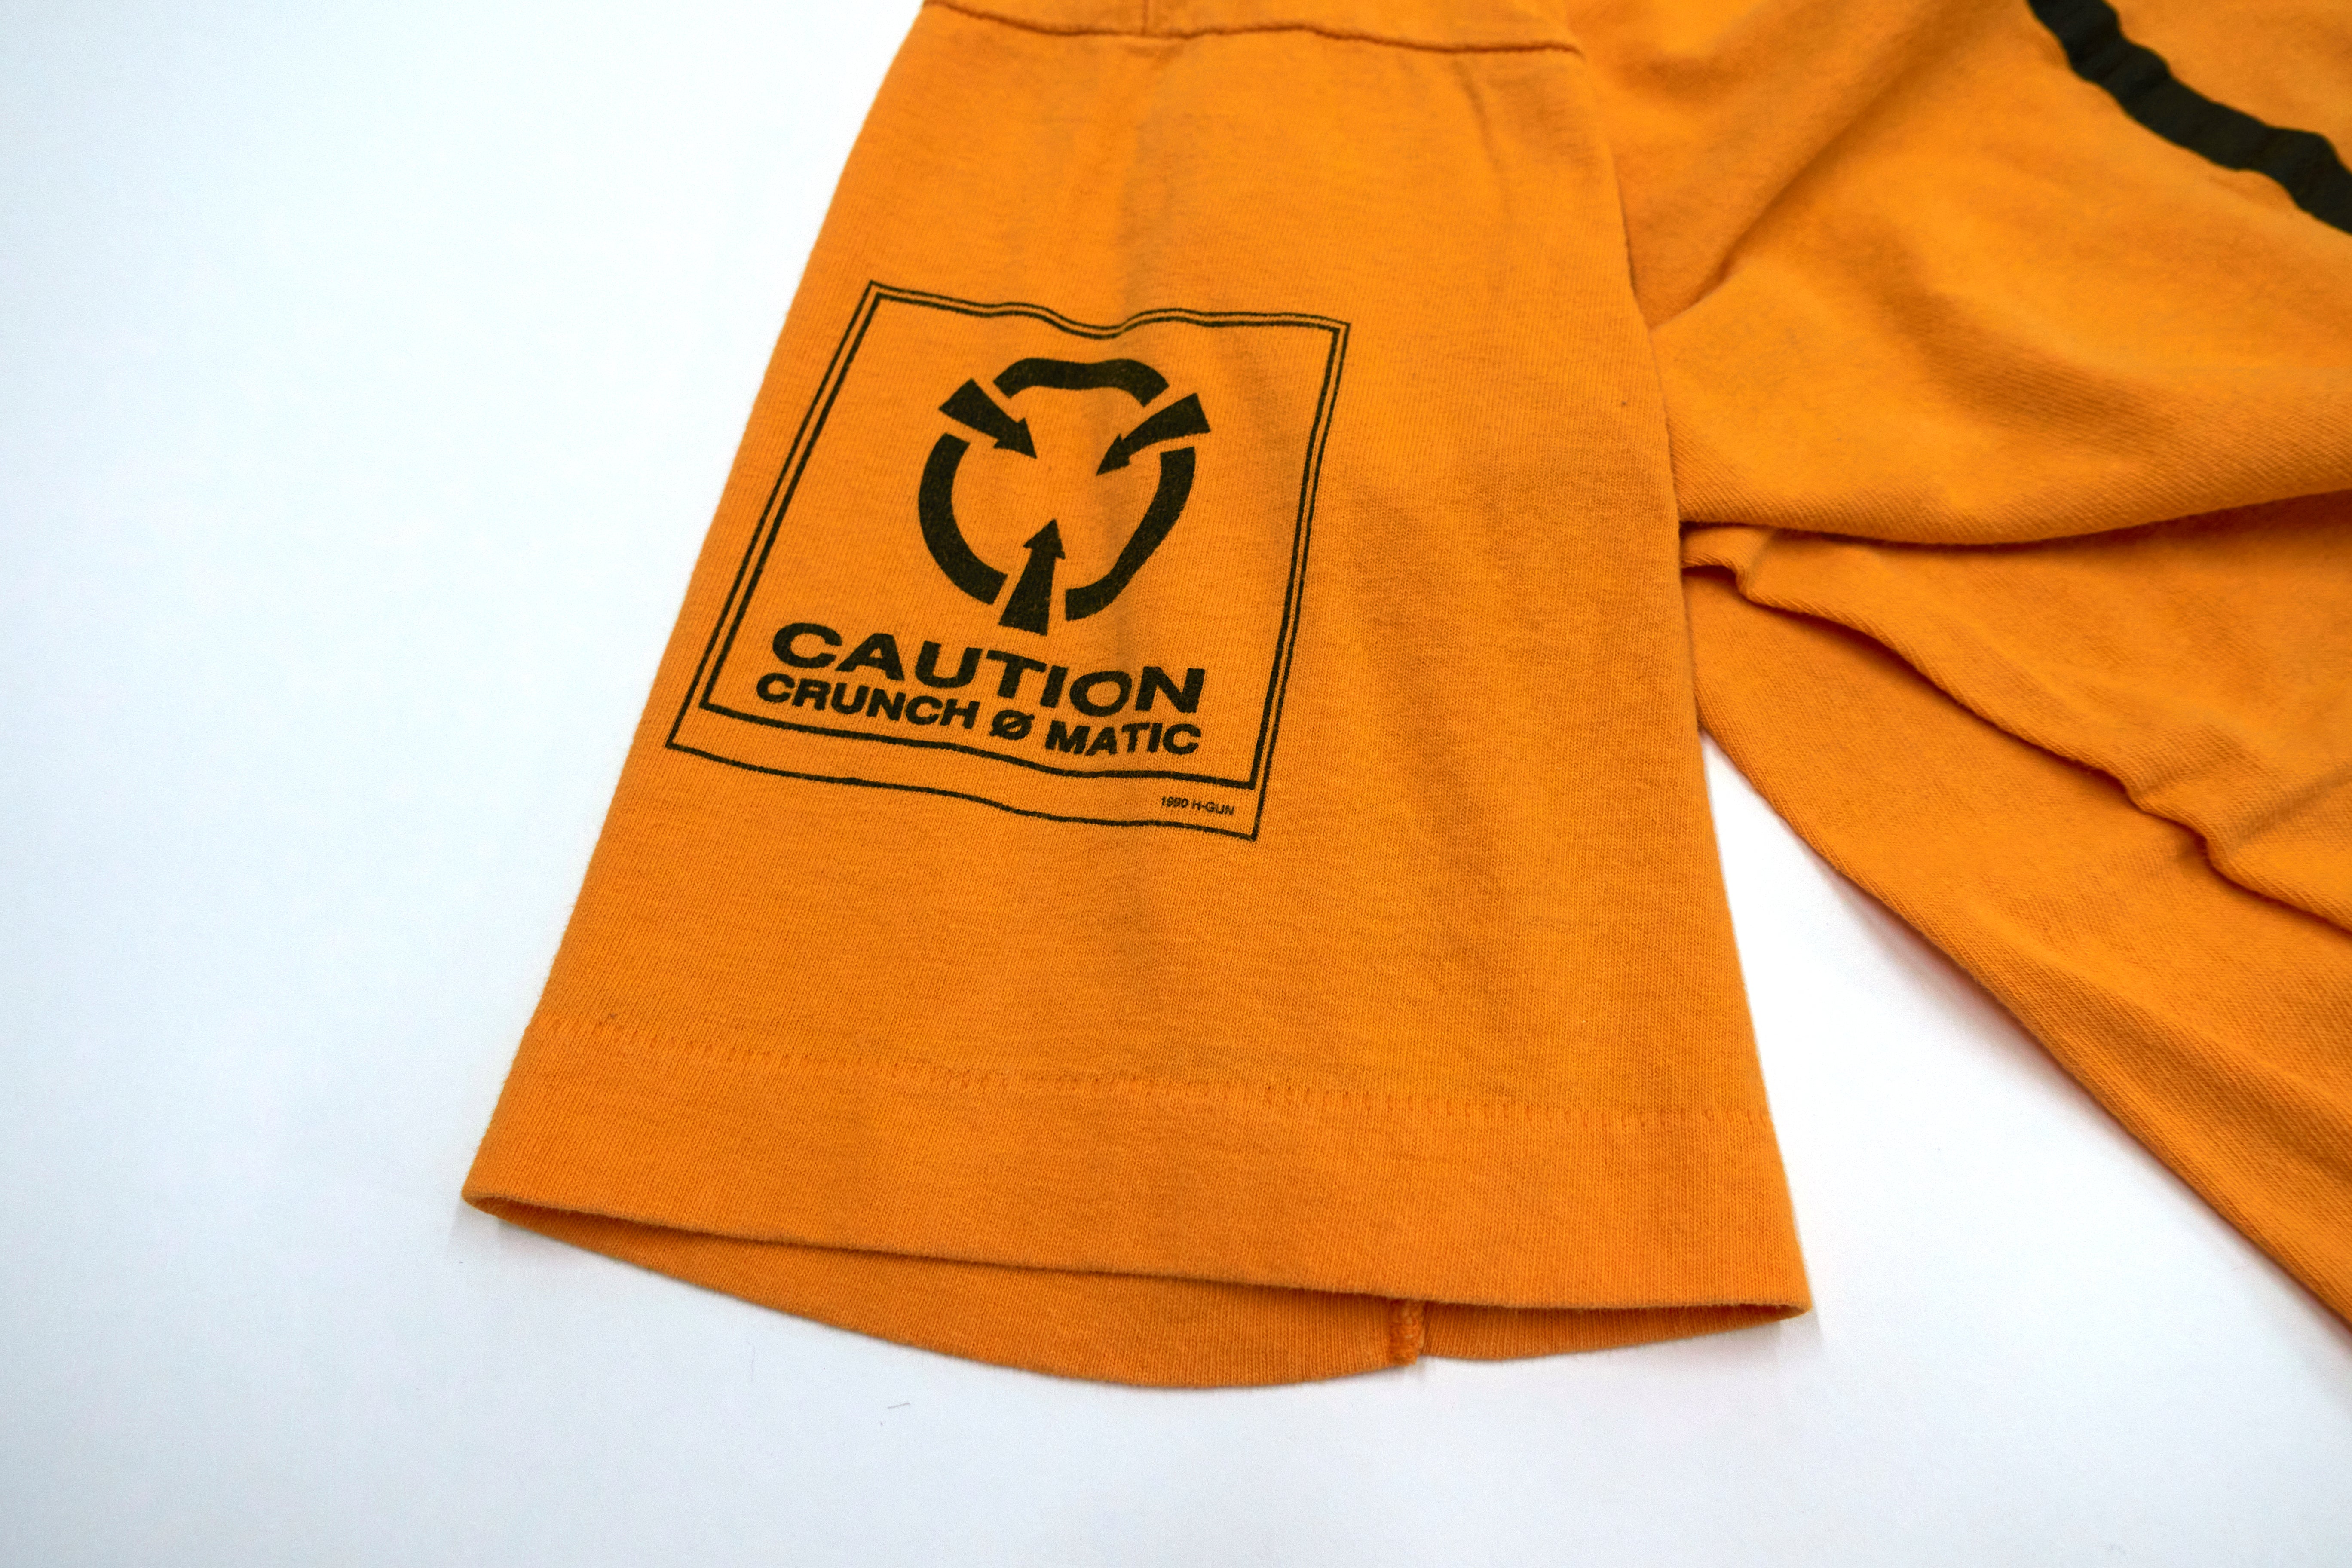 Crunch-Ø-Matic Caution Do Not Play 1991 Tour Shirt Size XL